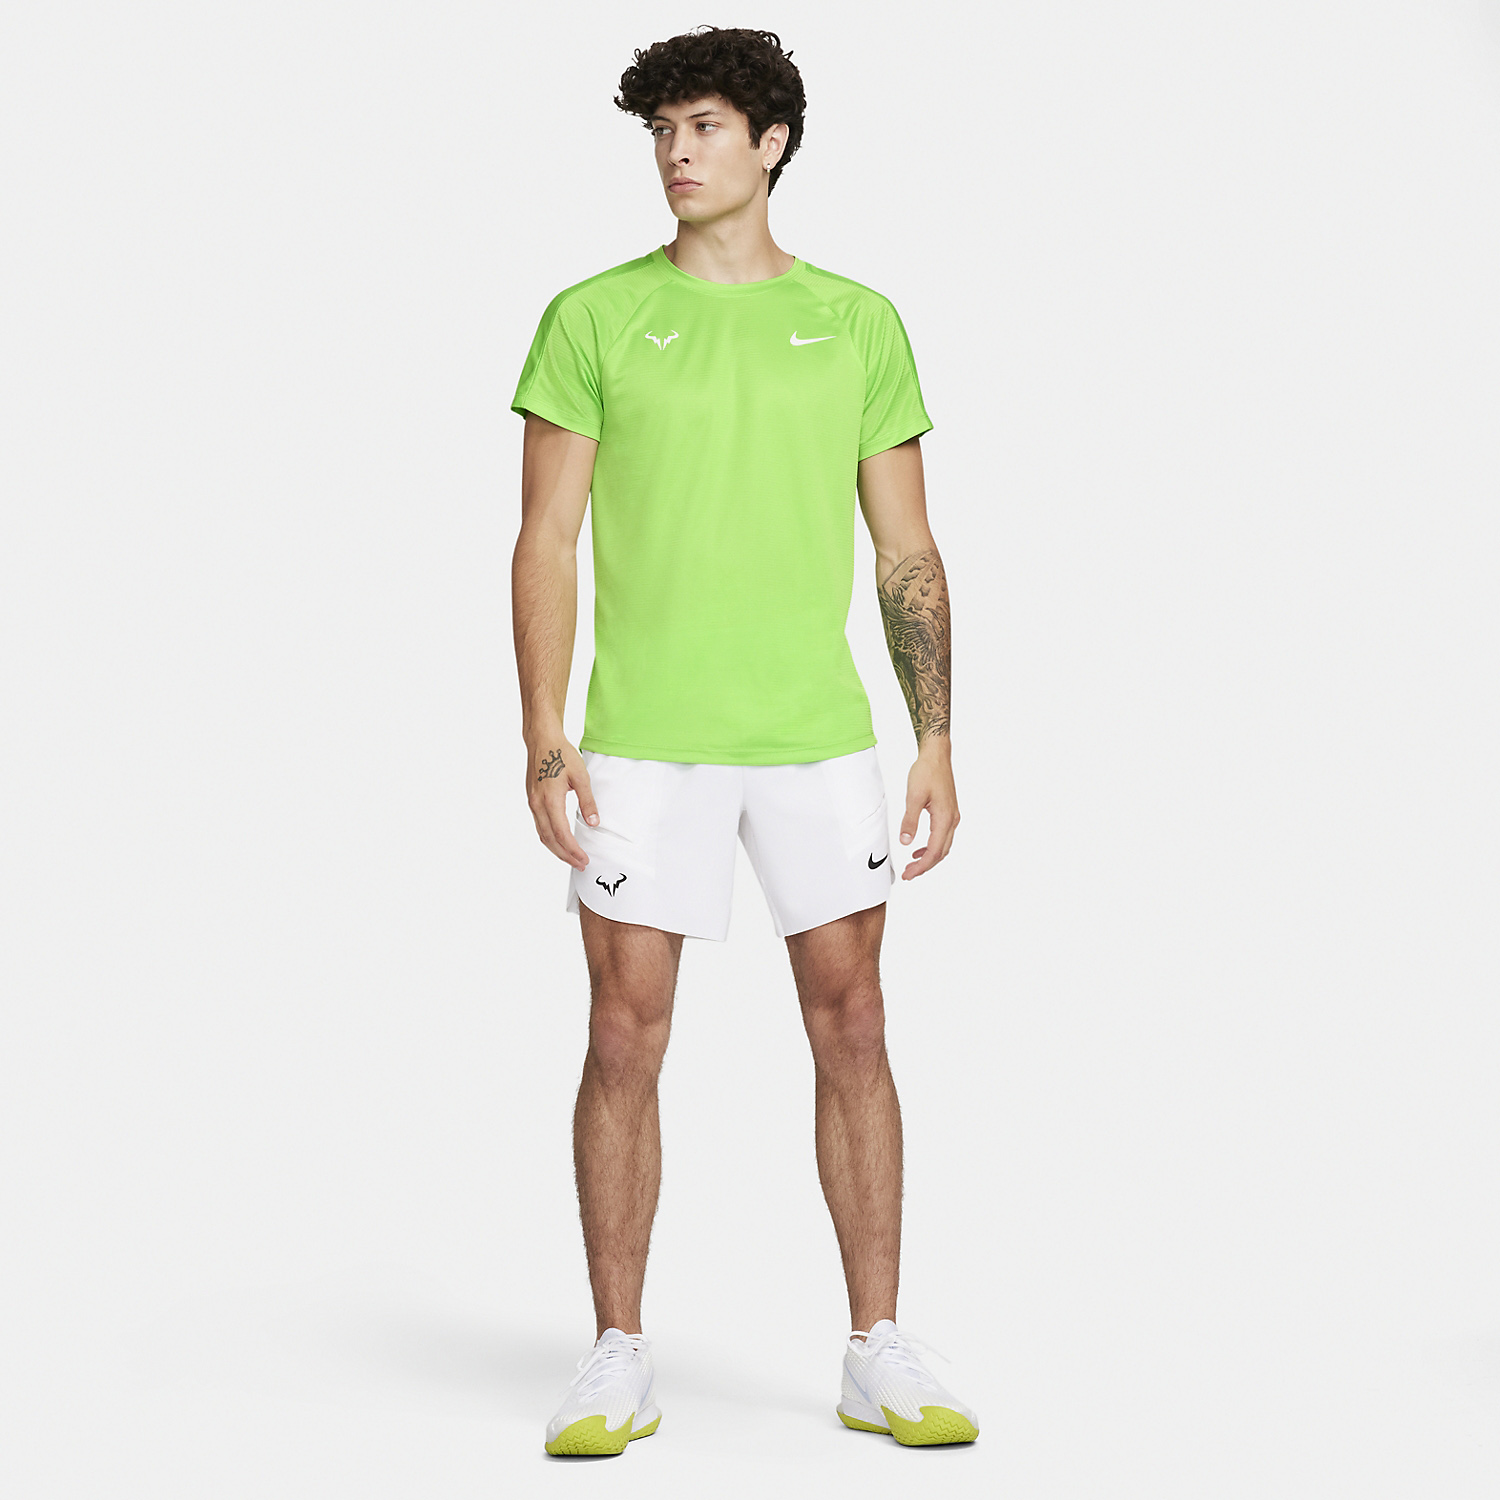 Nike Rafa Challenger Camiseta - Action Green/Light Lemon Twist/White